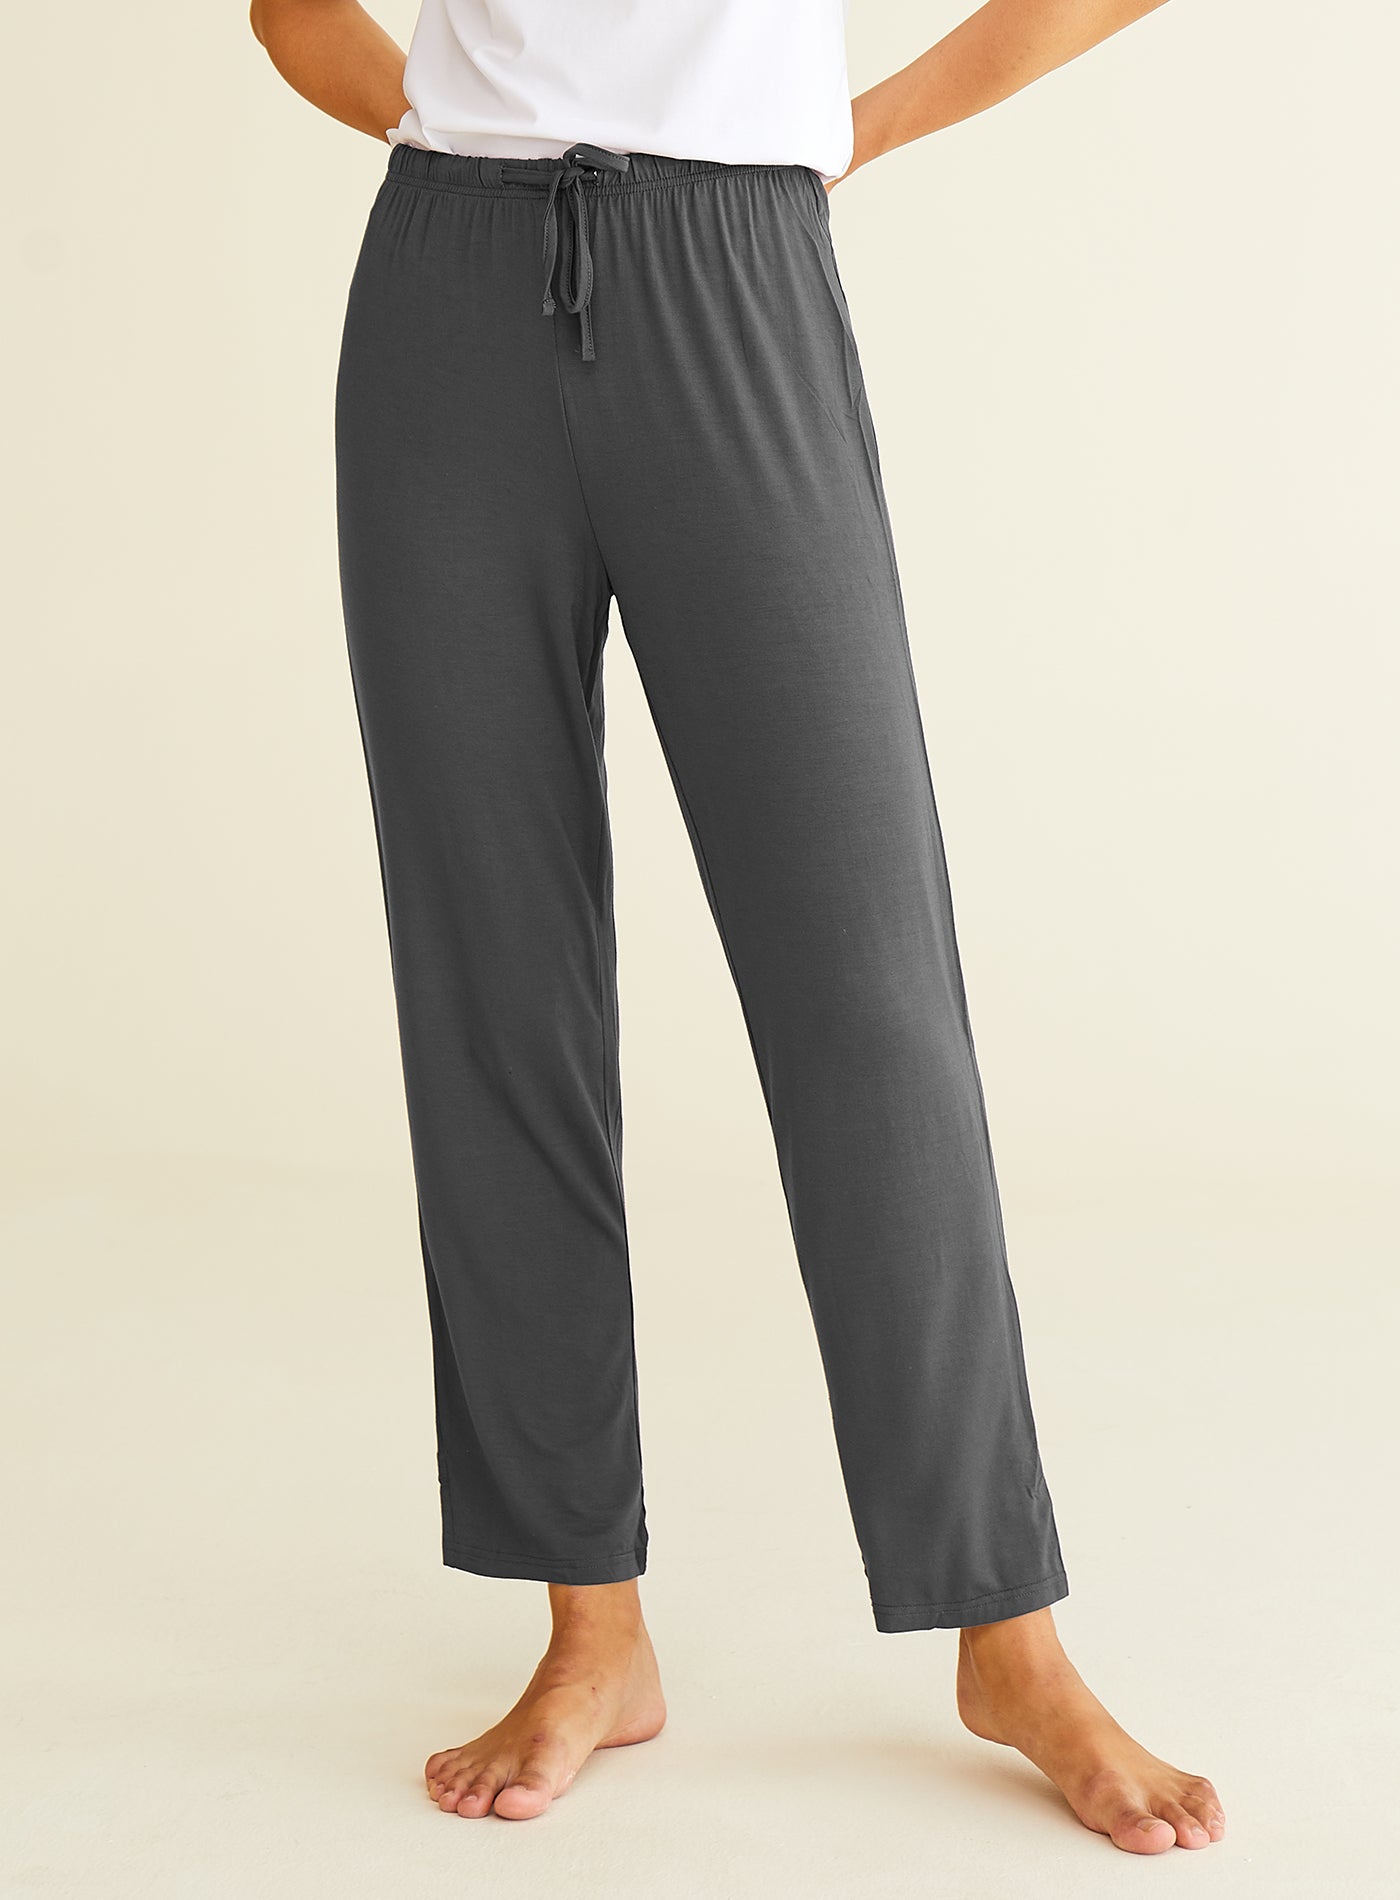 Women's Knit Loungewear Bamboo Pajama Pants